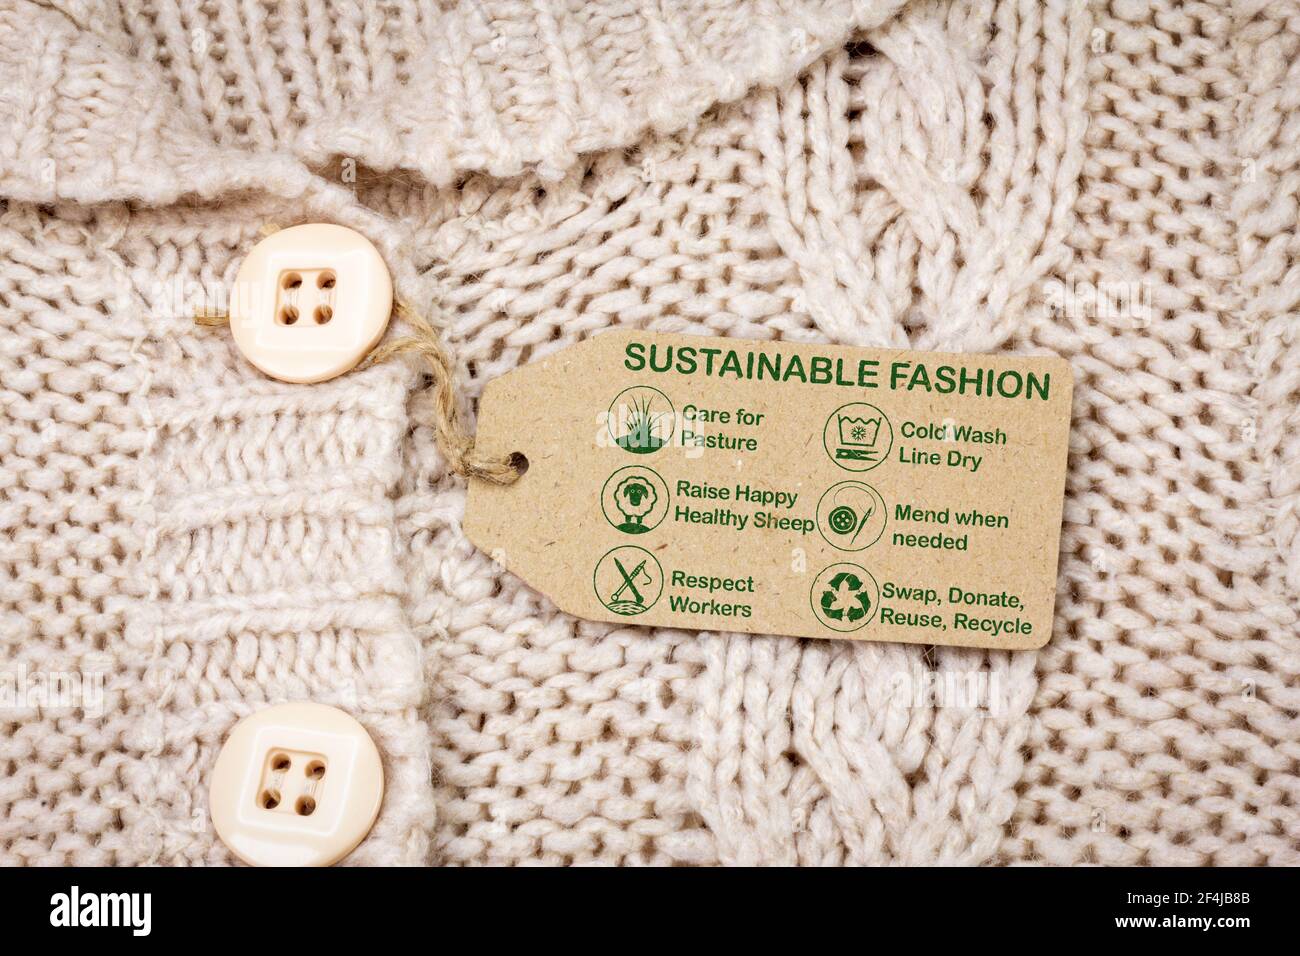 etiqueta de moda sostenible en jersey de lana con iconos de cuidado y texto, consumismo ético Foto de stock